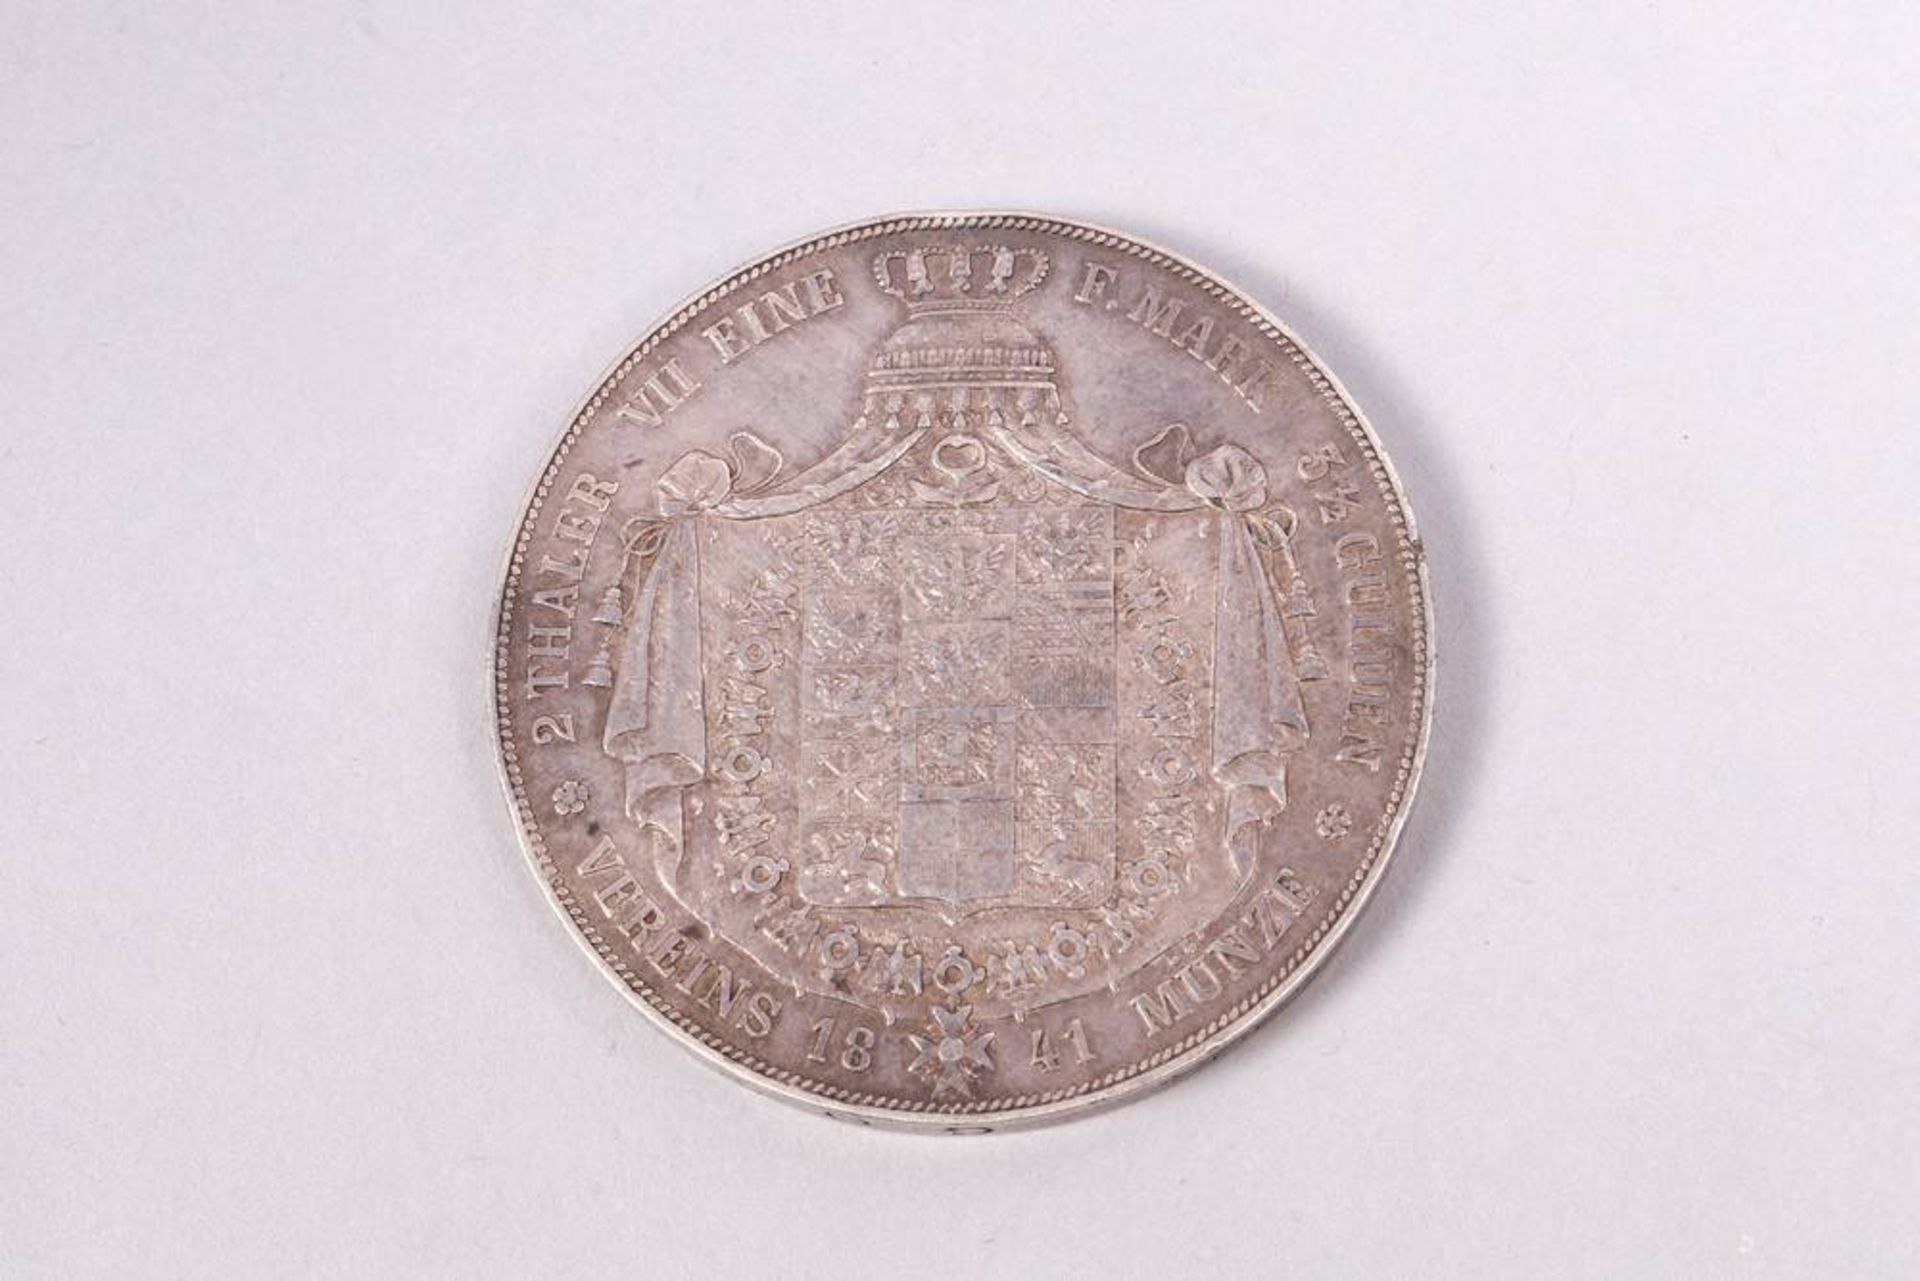 2 Thaler / Doppelthaler, 3 1/2 Gulden, 1841, Prussia, silver, SS-VZ - Image 2 of 2